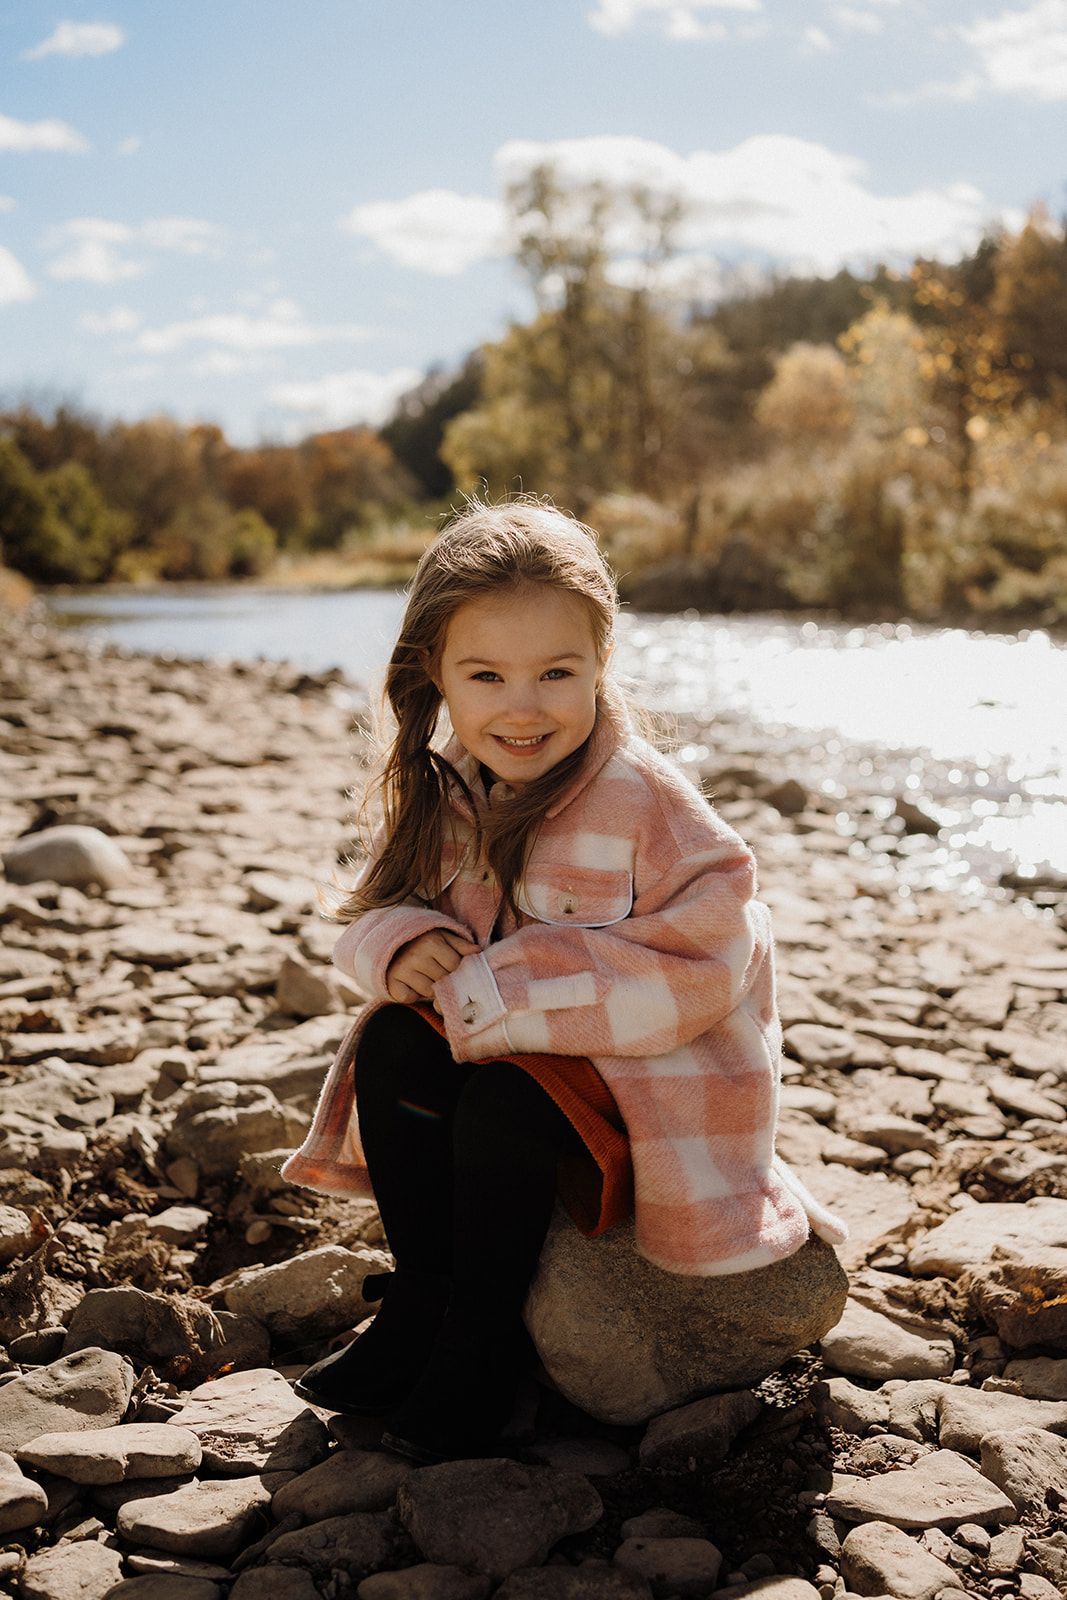 A little girl sitting on a rock outside.